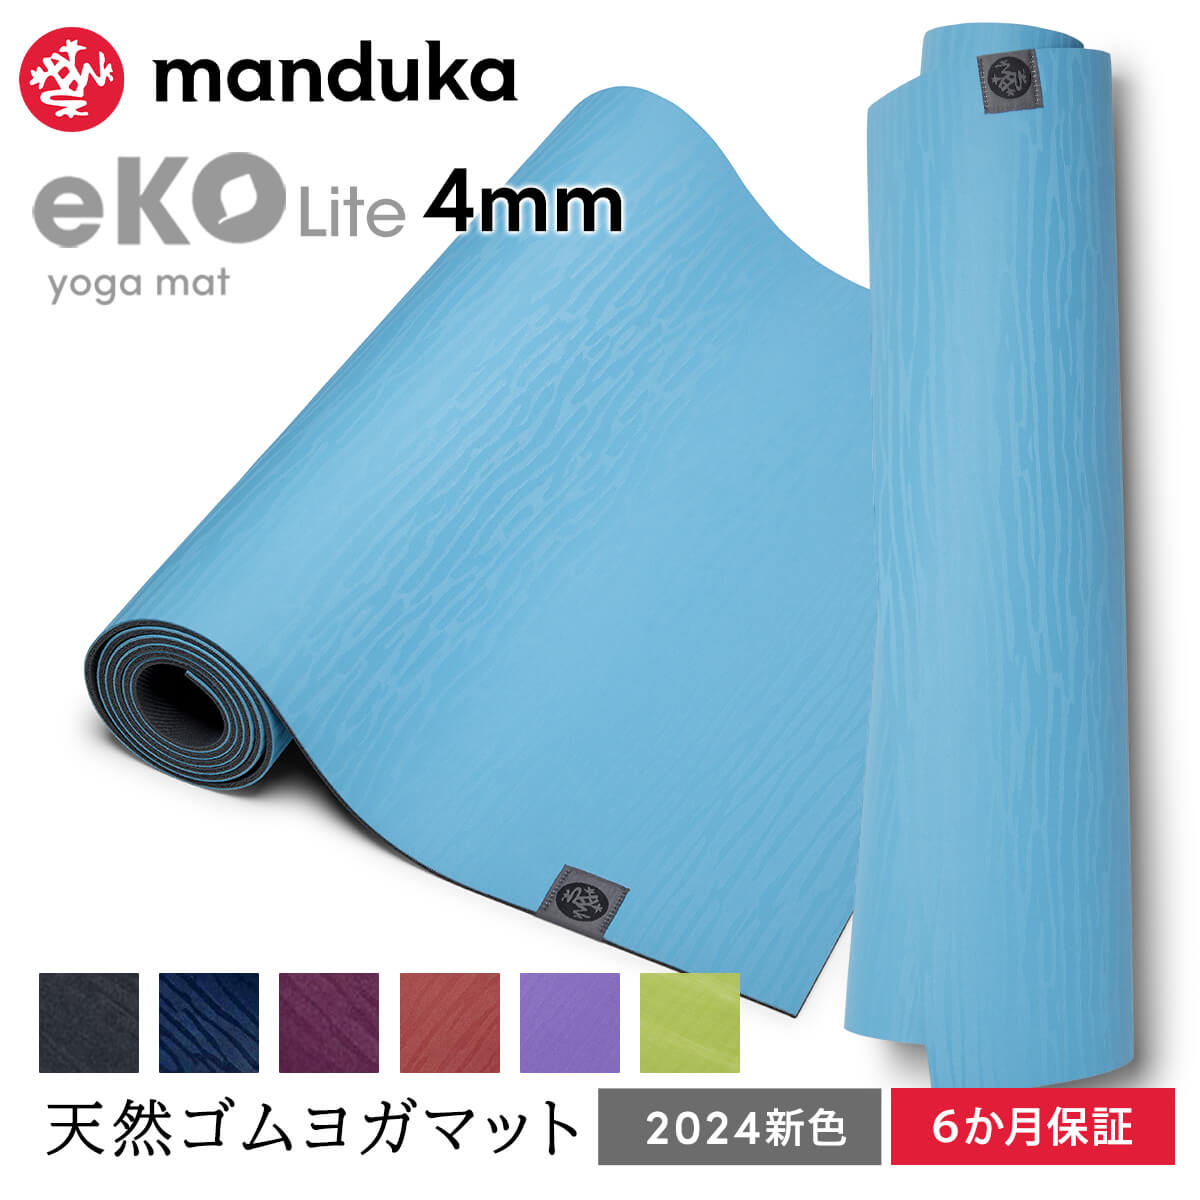 マンドゥカ Manduka ヨガマット エコライト 4mm 《6か月保証》日本正規品 | eKO Lite yoga mat 天然ゴム 筋トレ トレーニング ピラティス 柄 24SS MR [ST-MA]001 RVPA